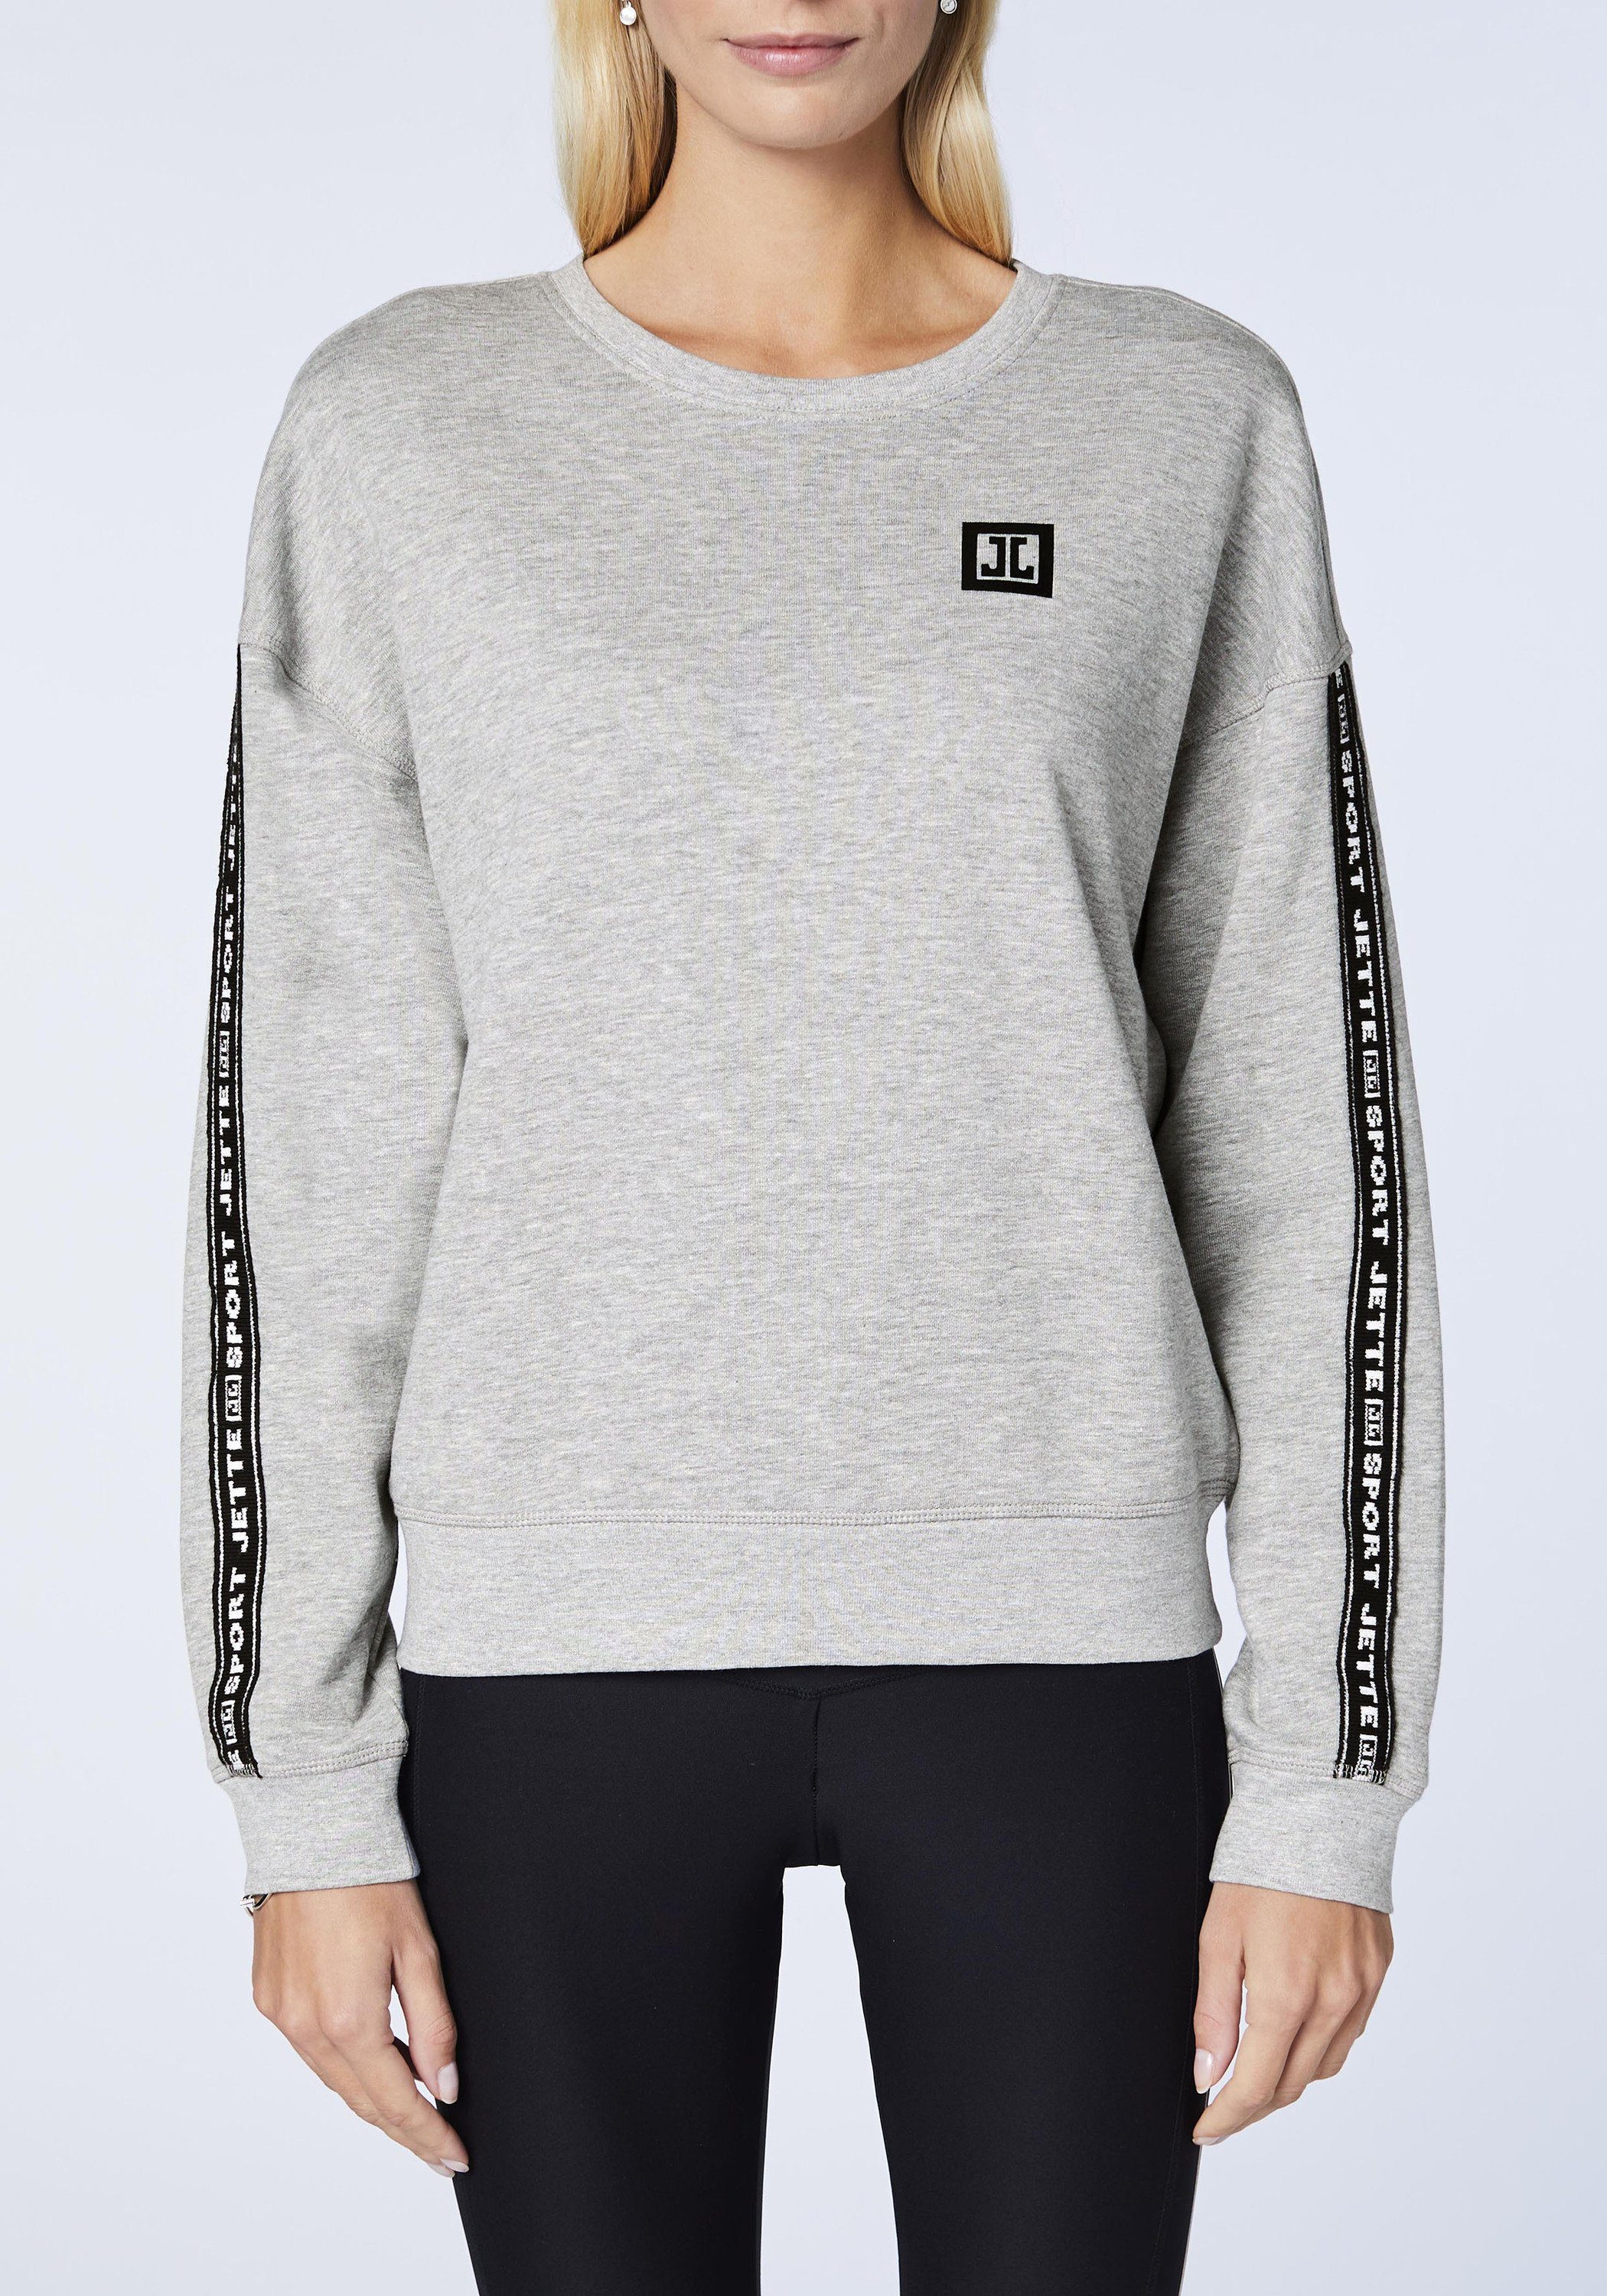 JETTE SPORT Label-Design 17-4402M im Neutral Sweatshirt Gray Melange